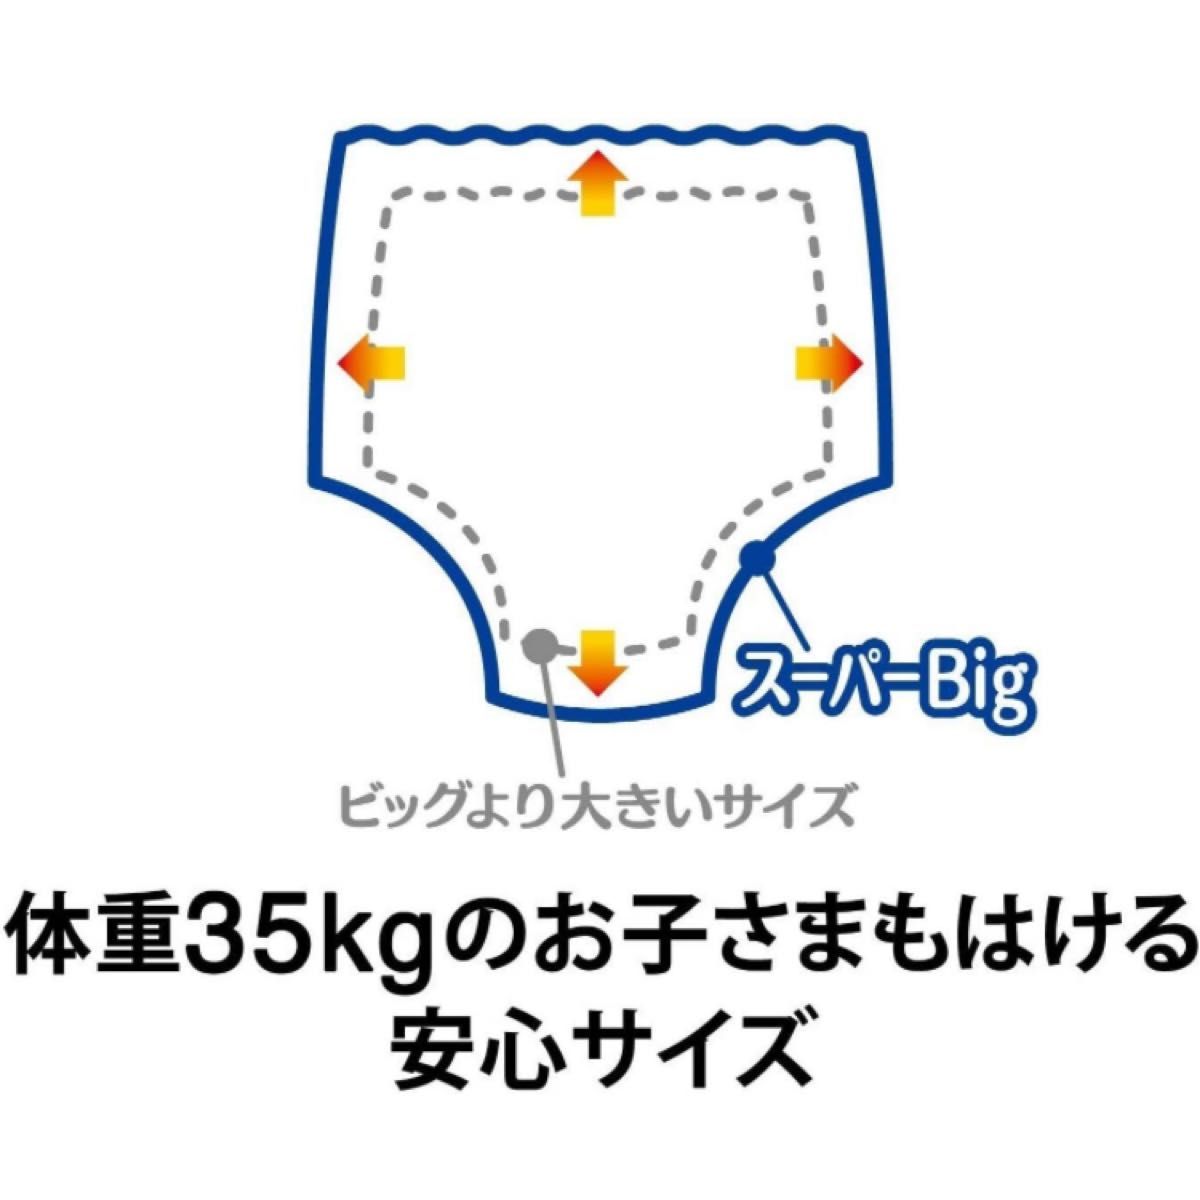 【6個】【パンツ スーパービッグ】ムーニーマン女の子 (18~35kg)14枚